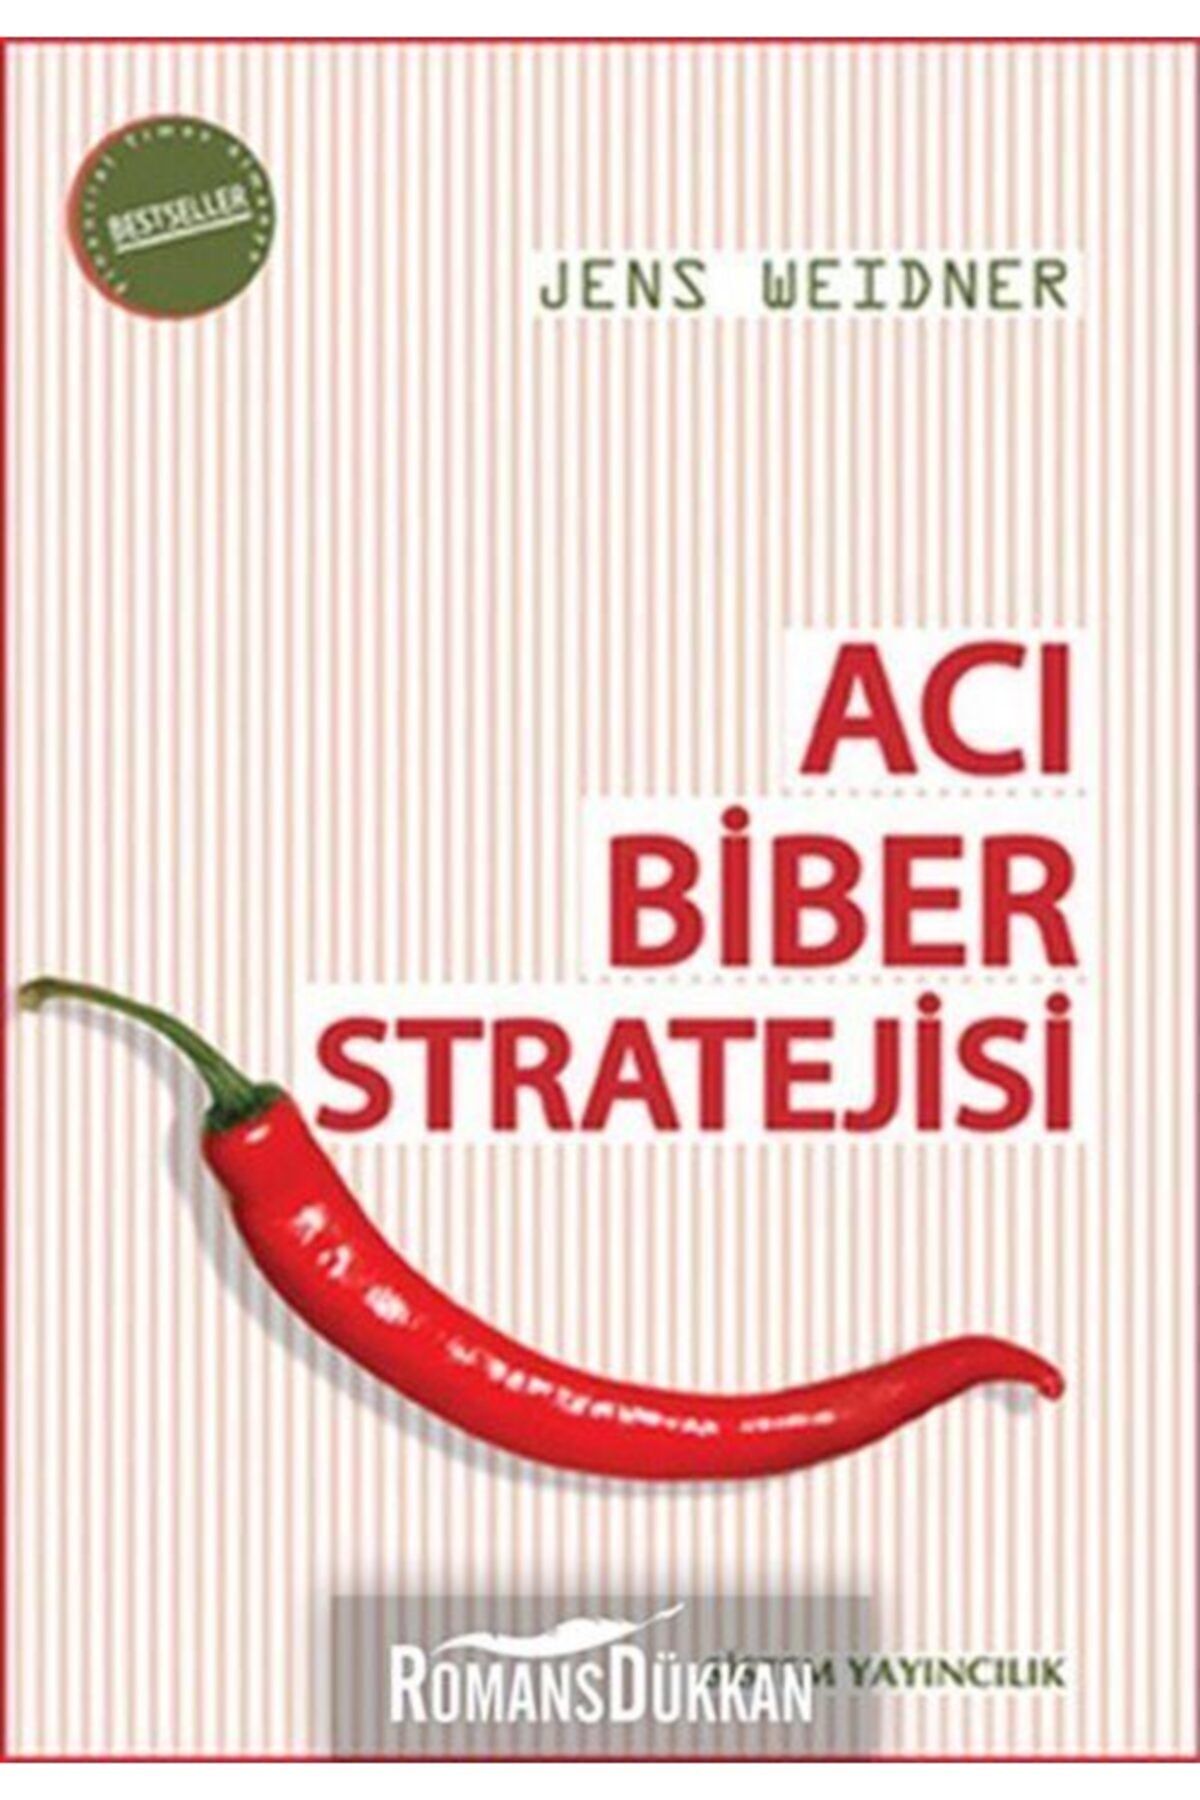 Genel Markalar Acı Biber Stratejisi - Kitapları - Jens Weidner Kitabı